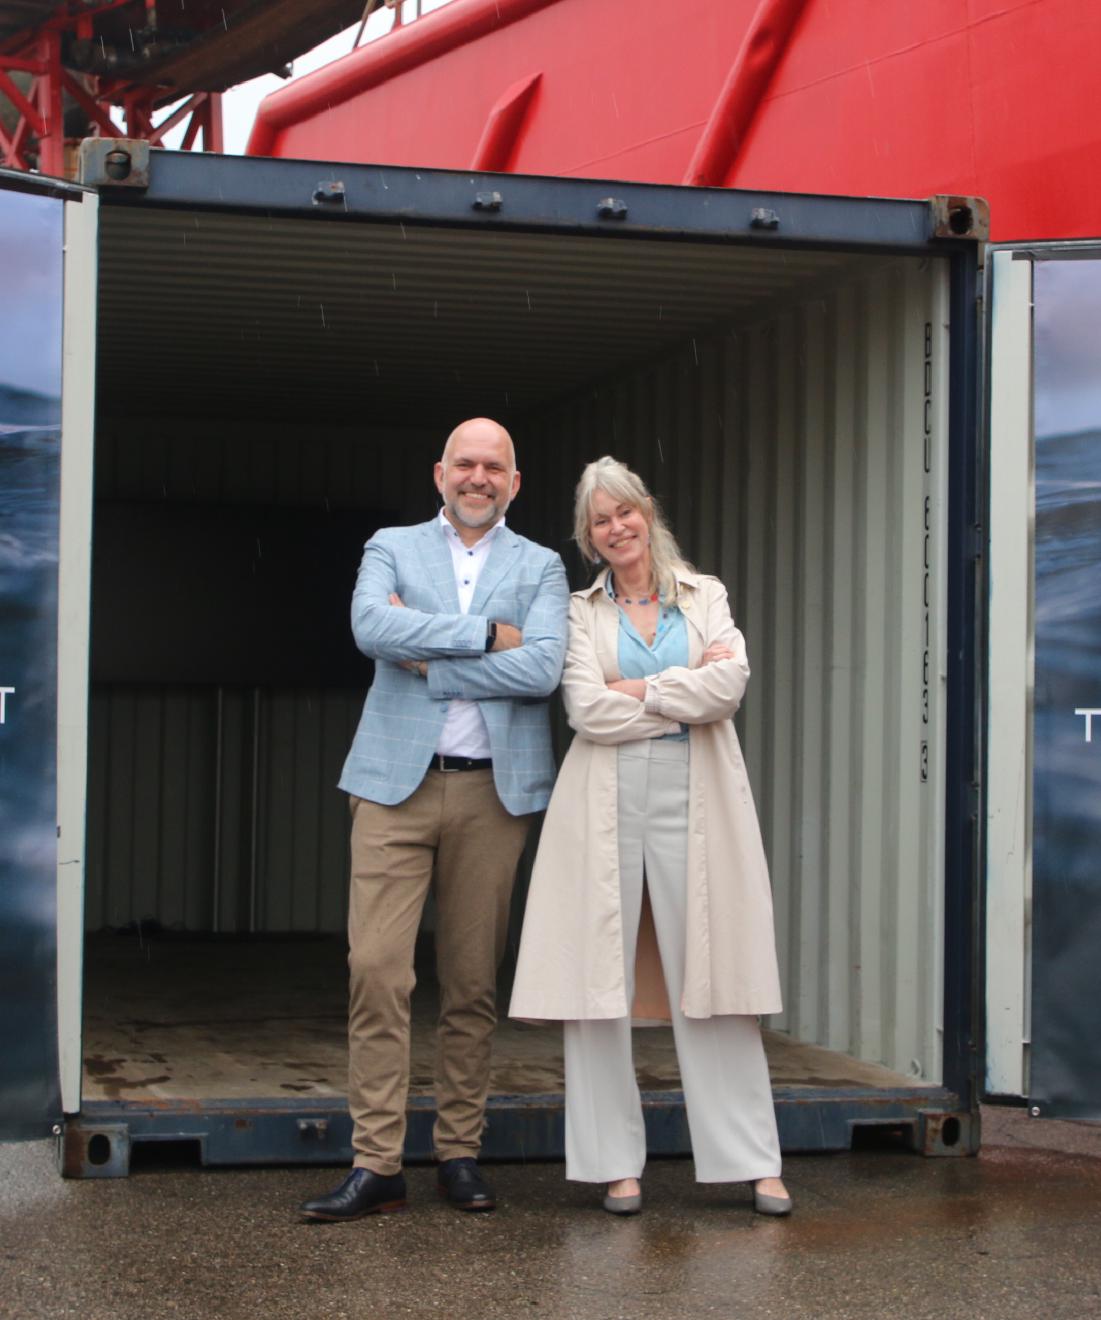 Opening zeecontainer met film Kanaal naar de toekomst - Havenfestival IJmuiden